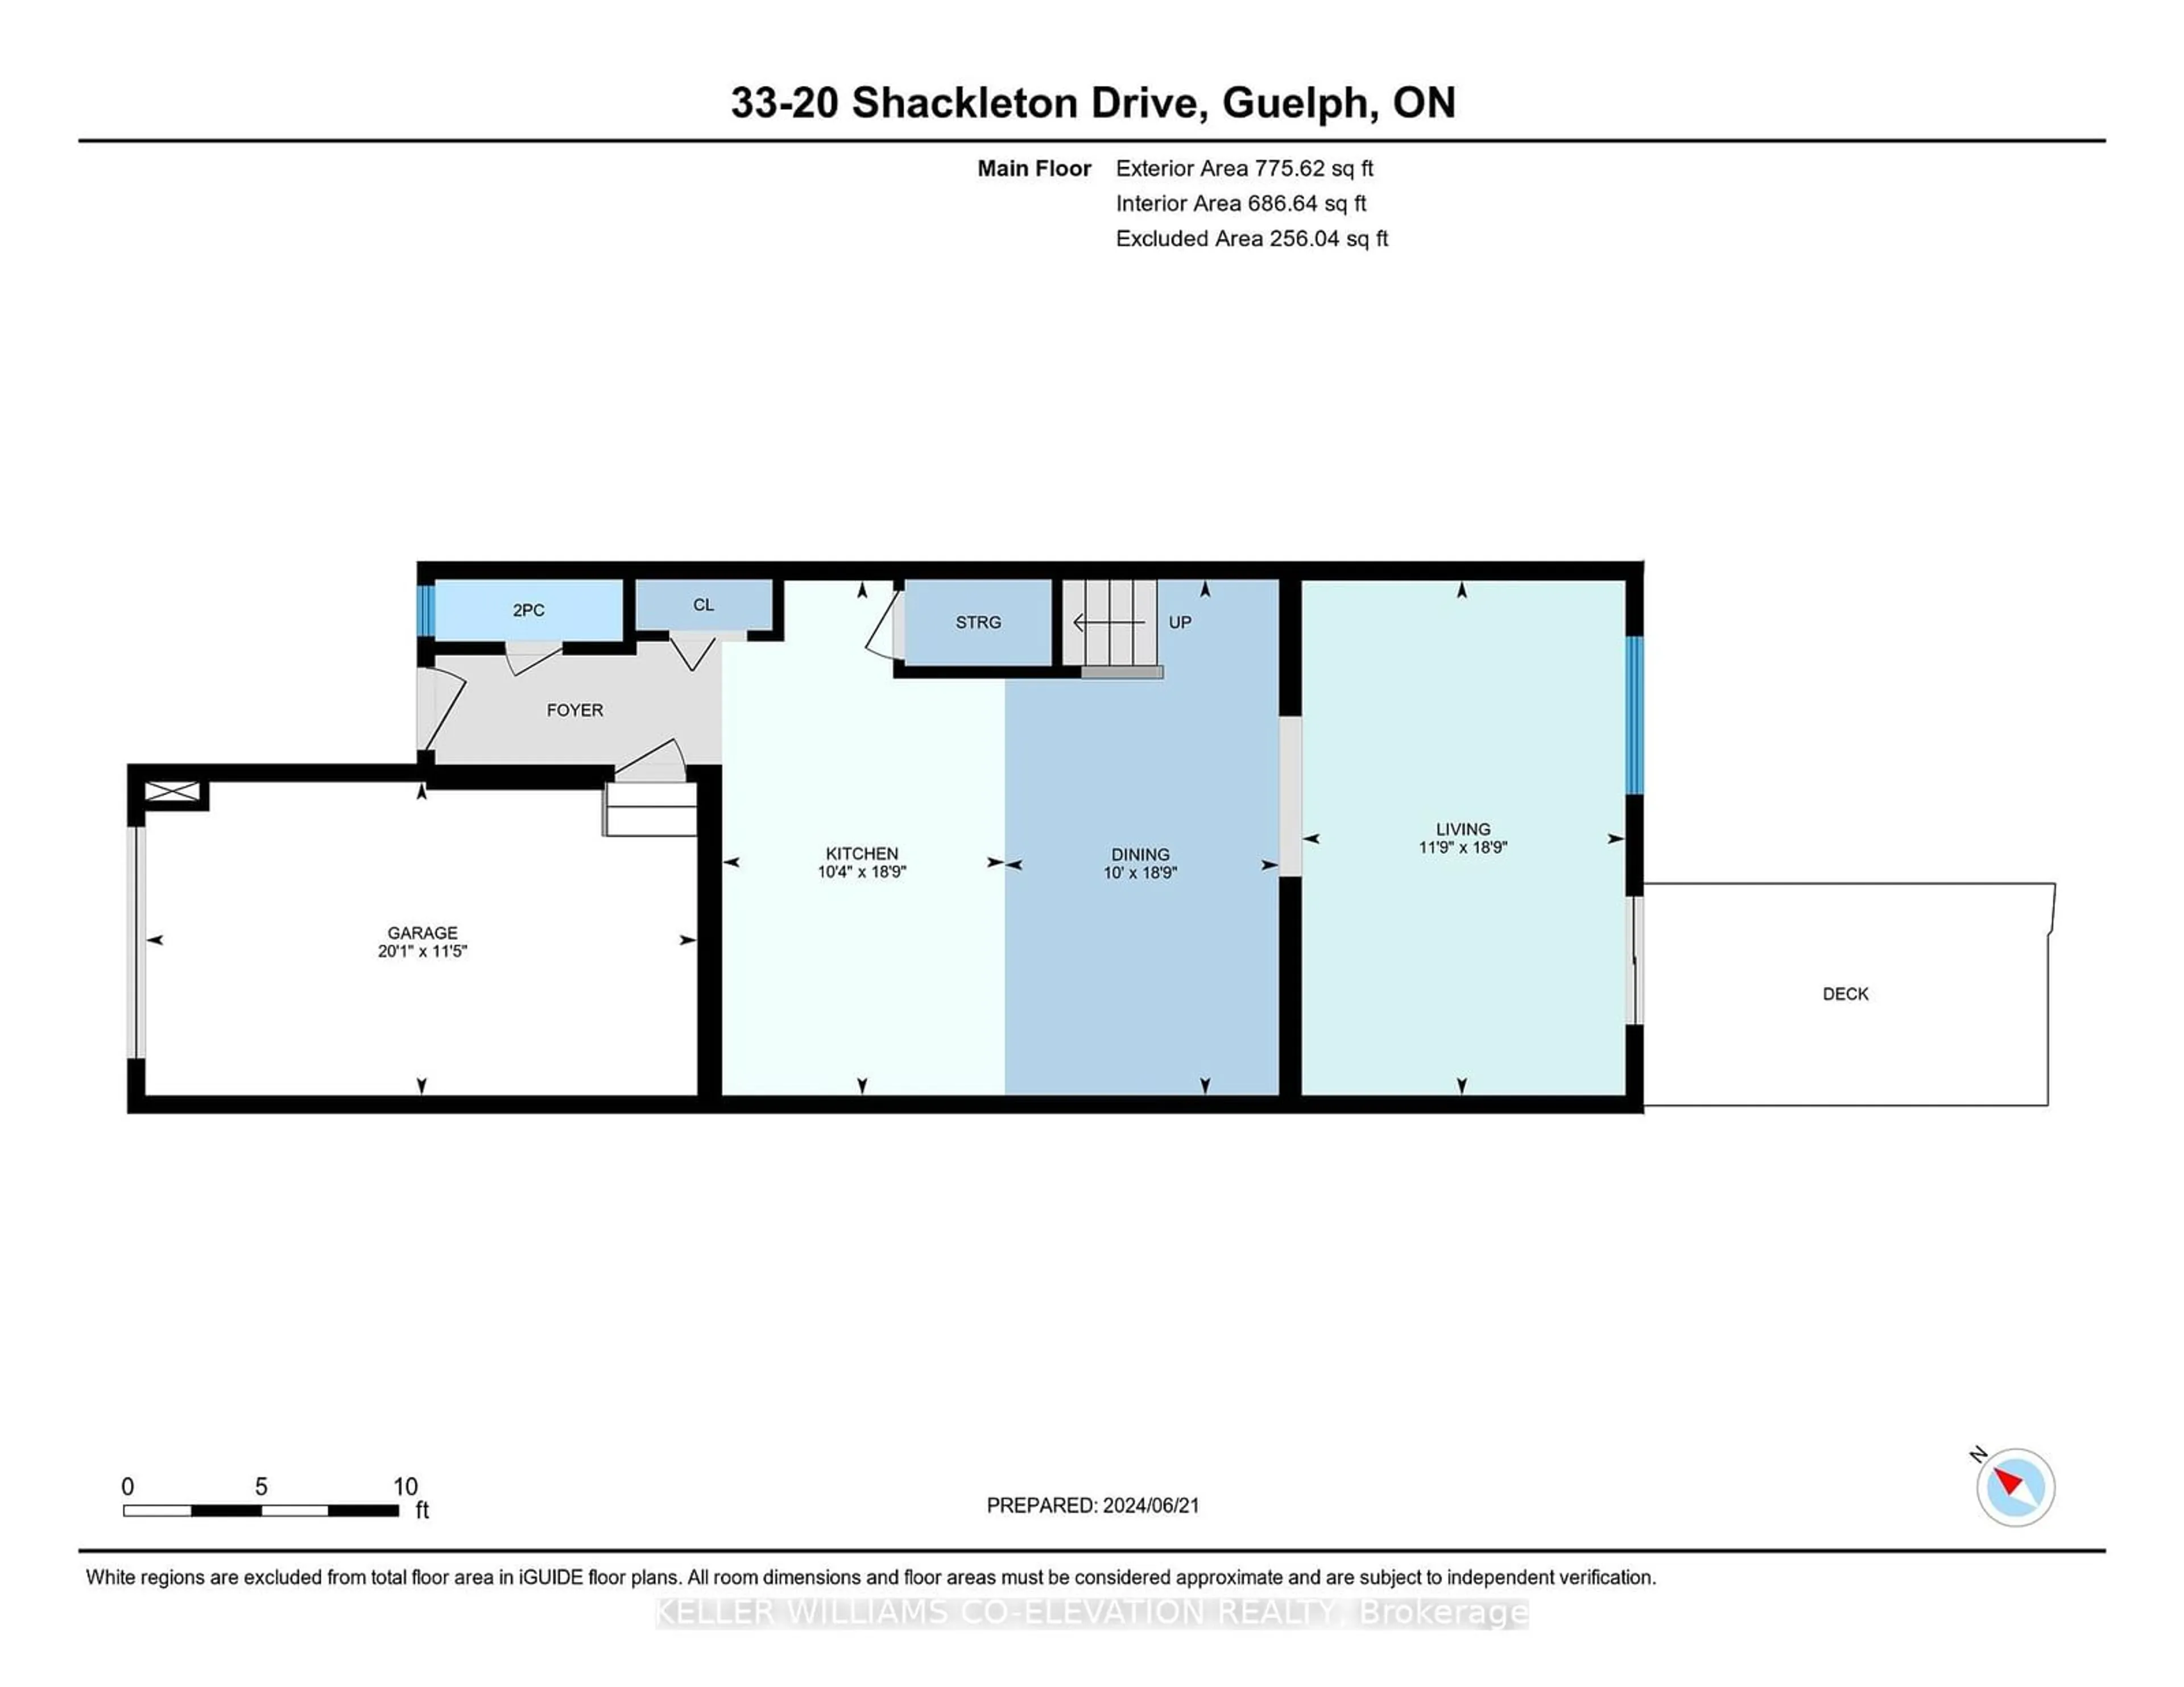 Floor plan for 20 Shackelton Dr #33, Guelph Ontario N1E 0C5